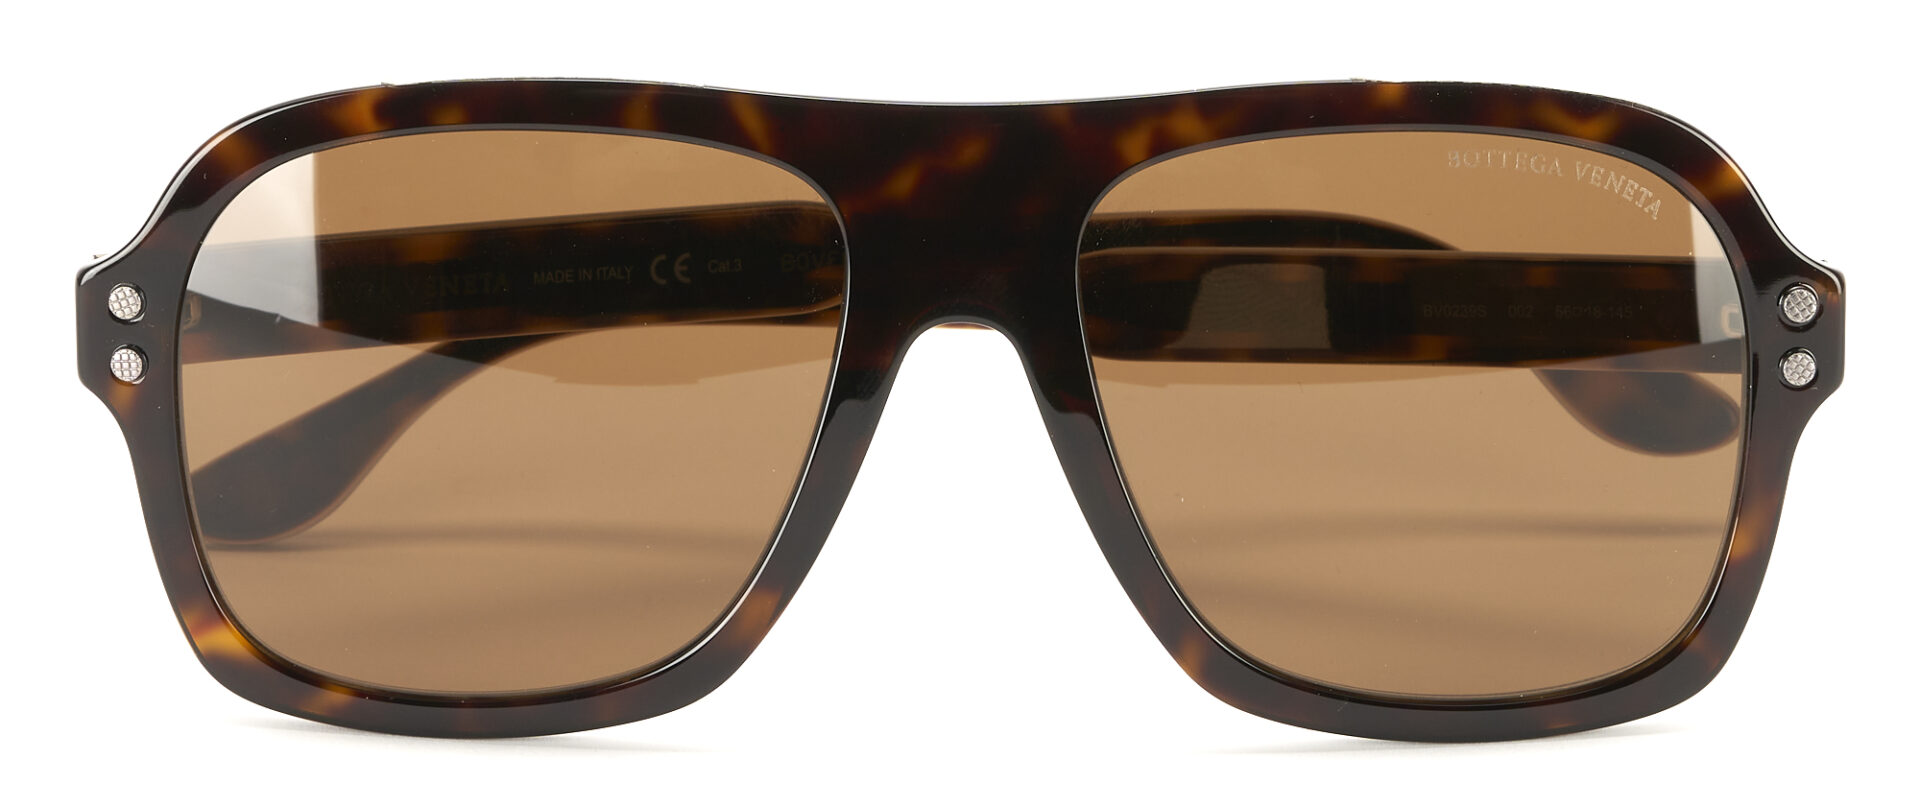 Lot 1208: 4 Bottega Veneta Sunglasses W/ Cases